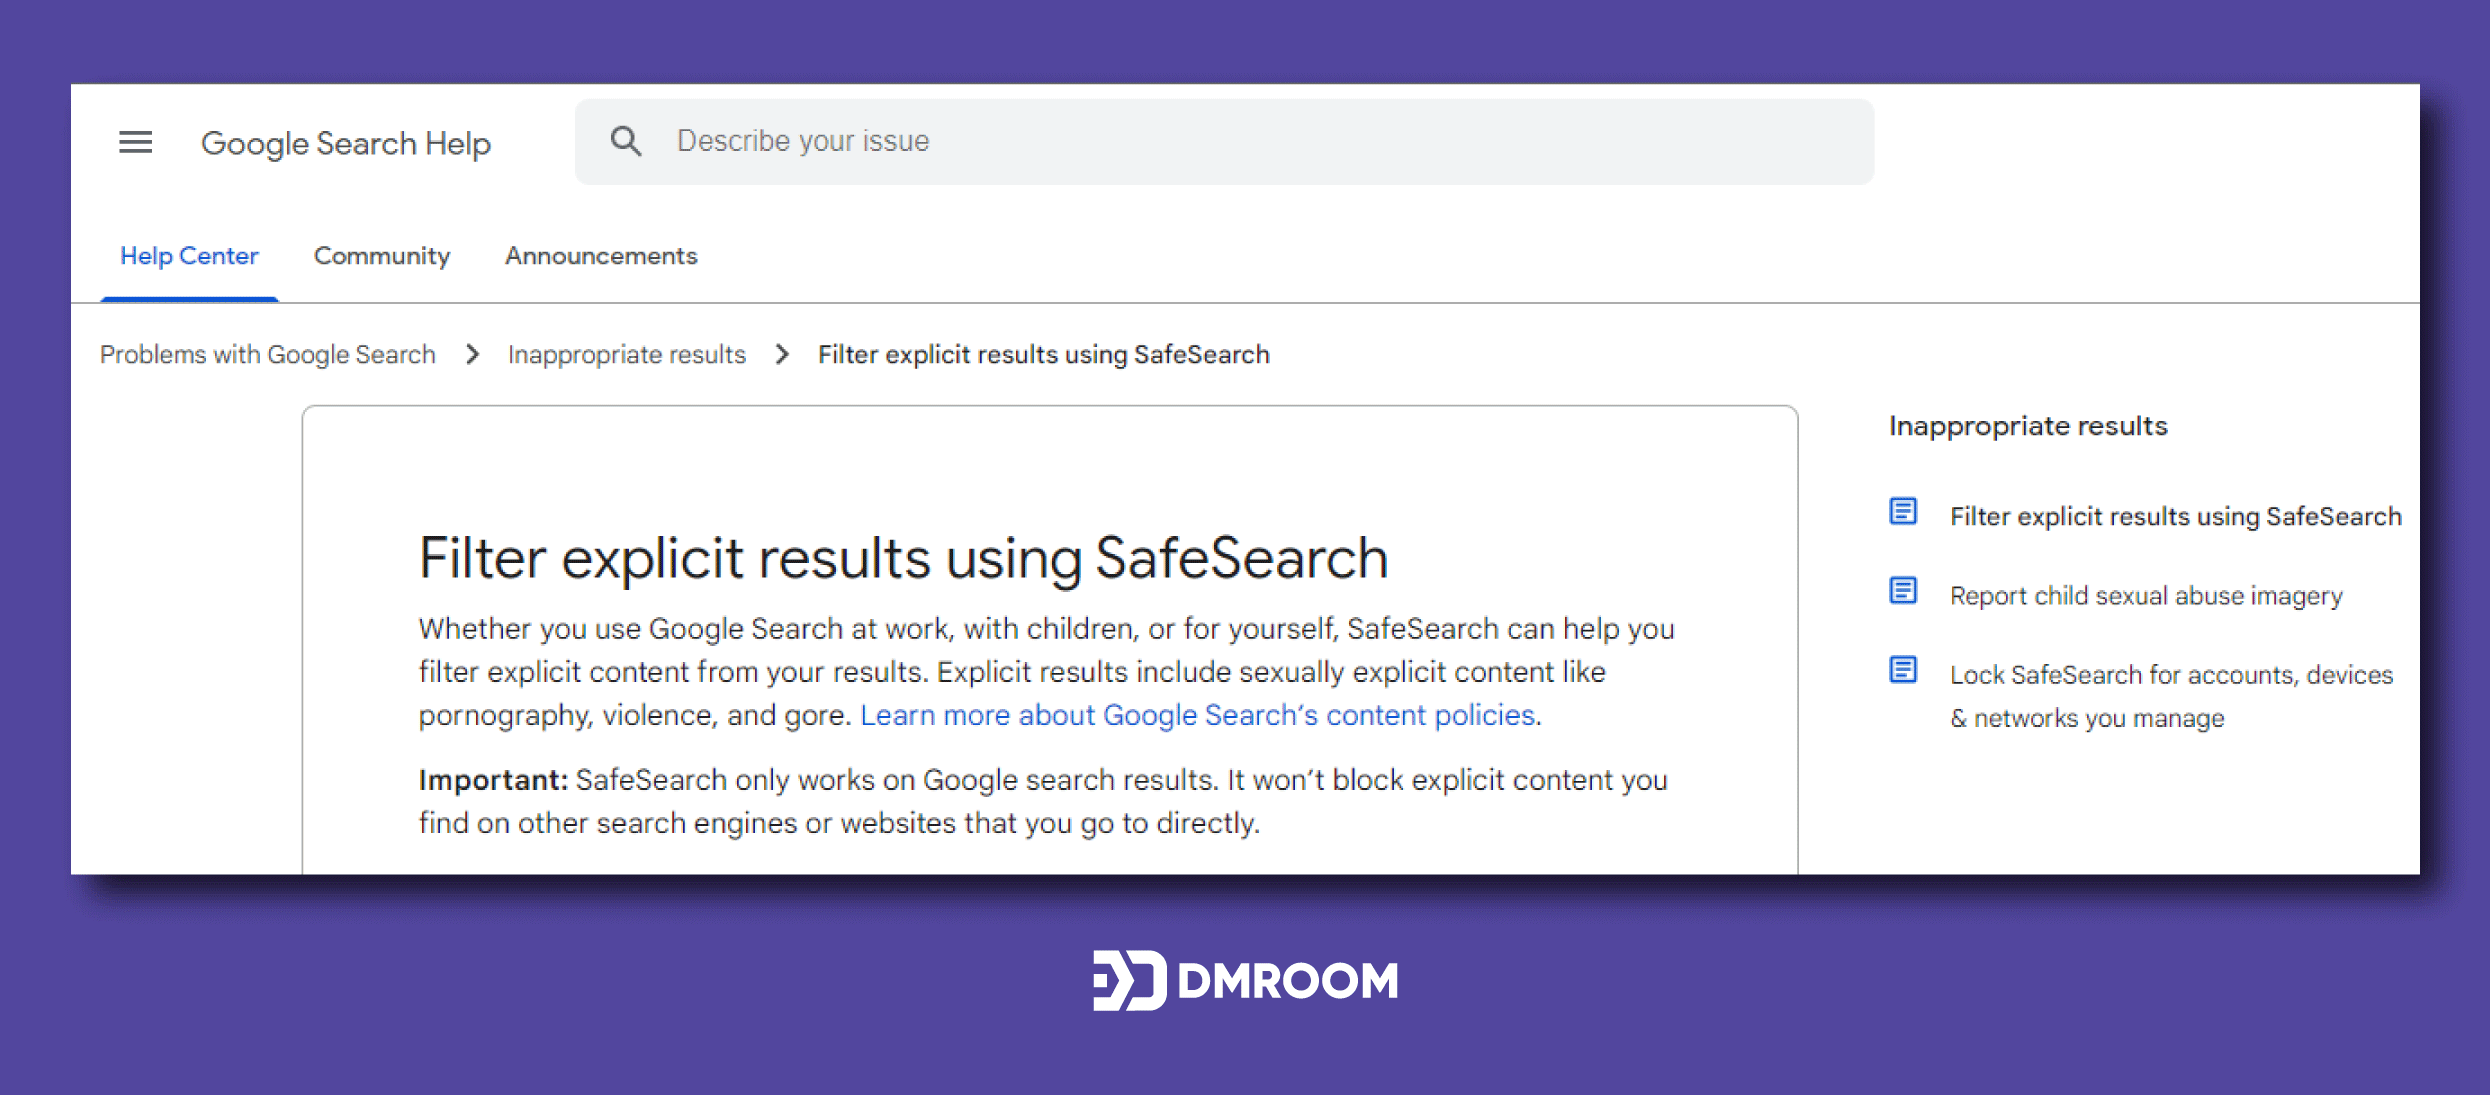 تاثیر Safe Search یا جستجو امن در نتایج جسنوی کاربران - 200 فاکتور رتبه بندی گوگل